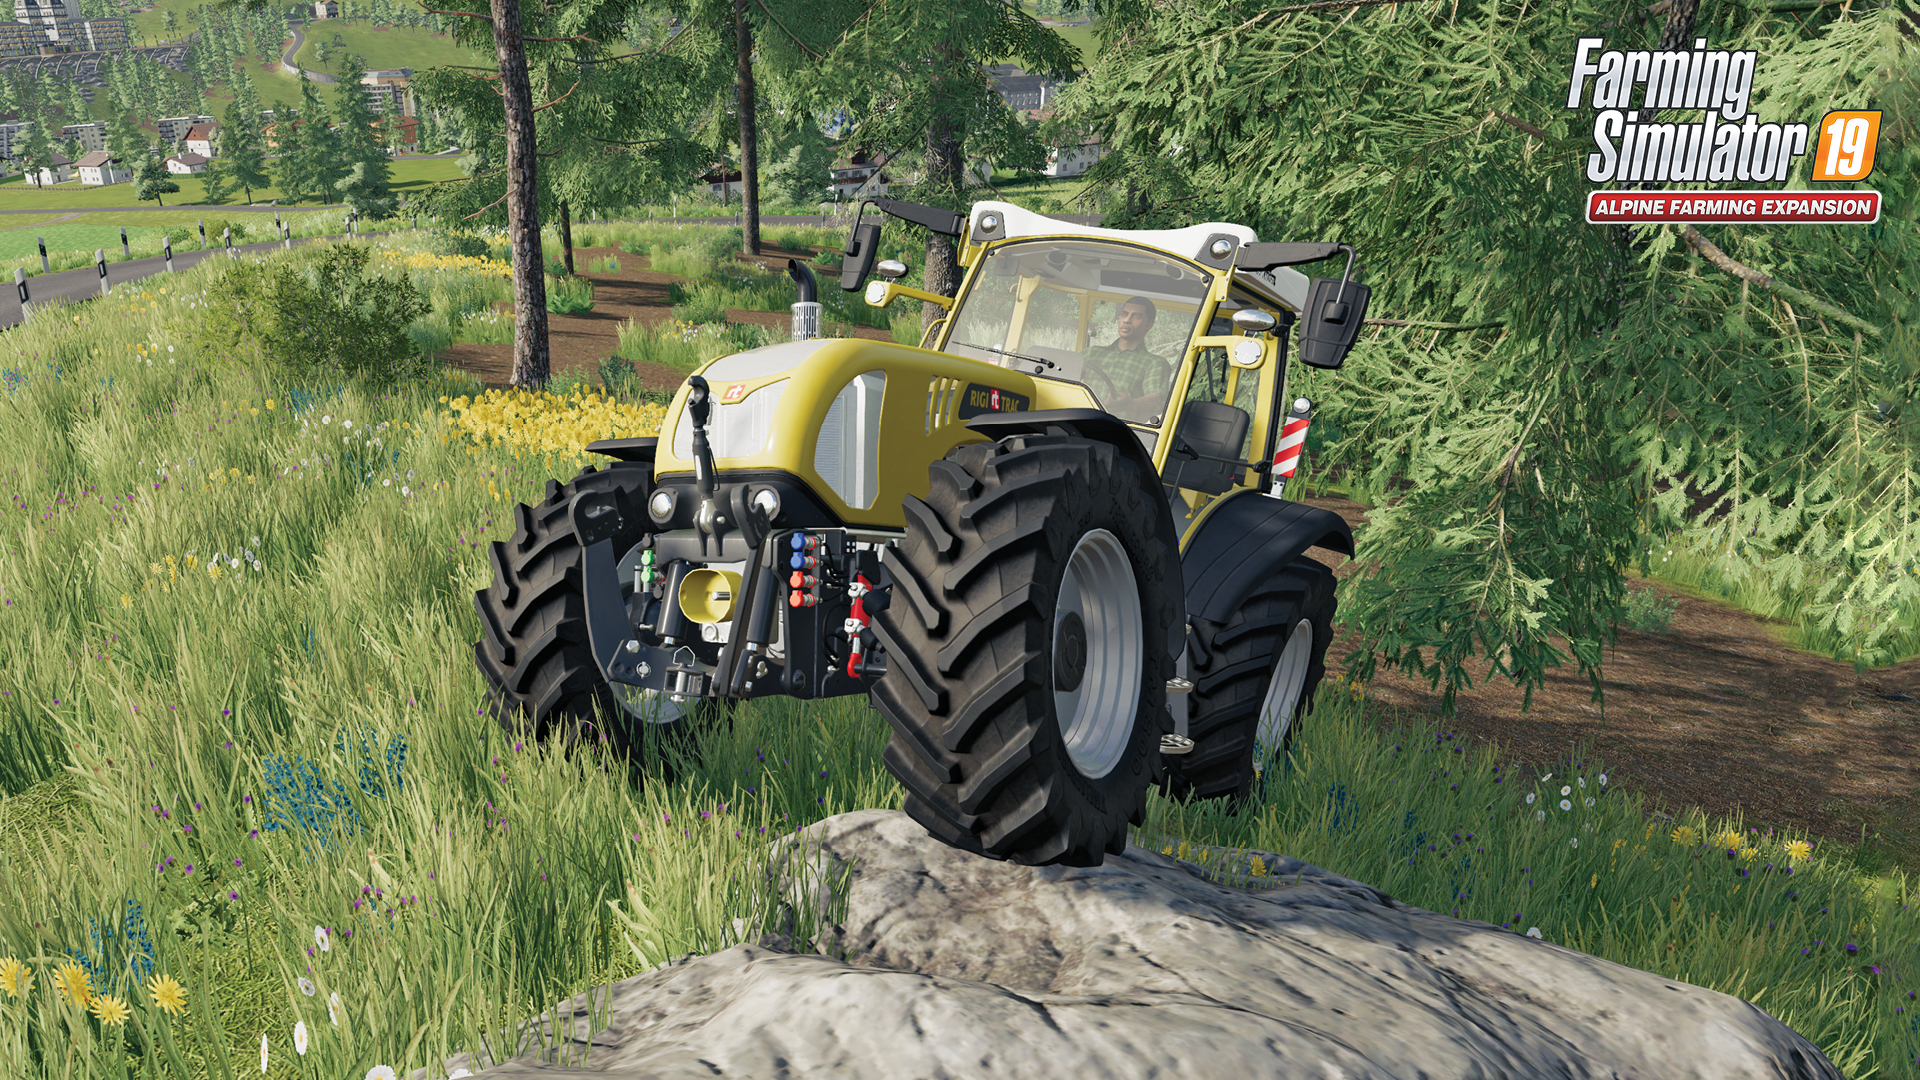 Comunità di Steam :: Farming Simulator 19